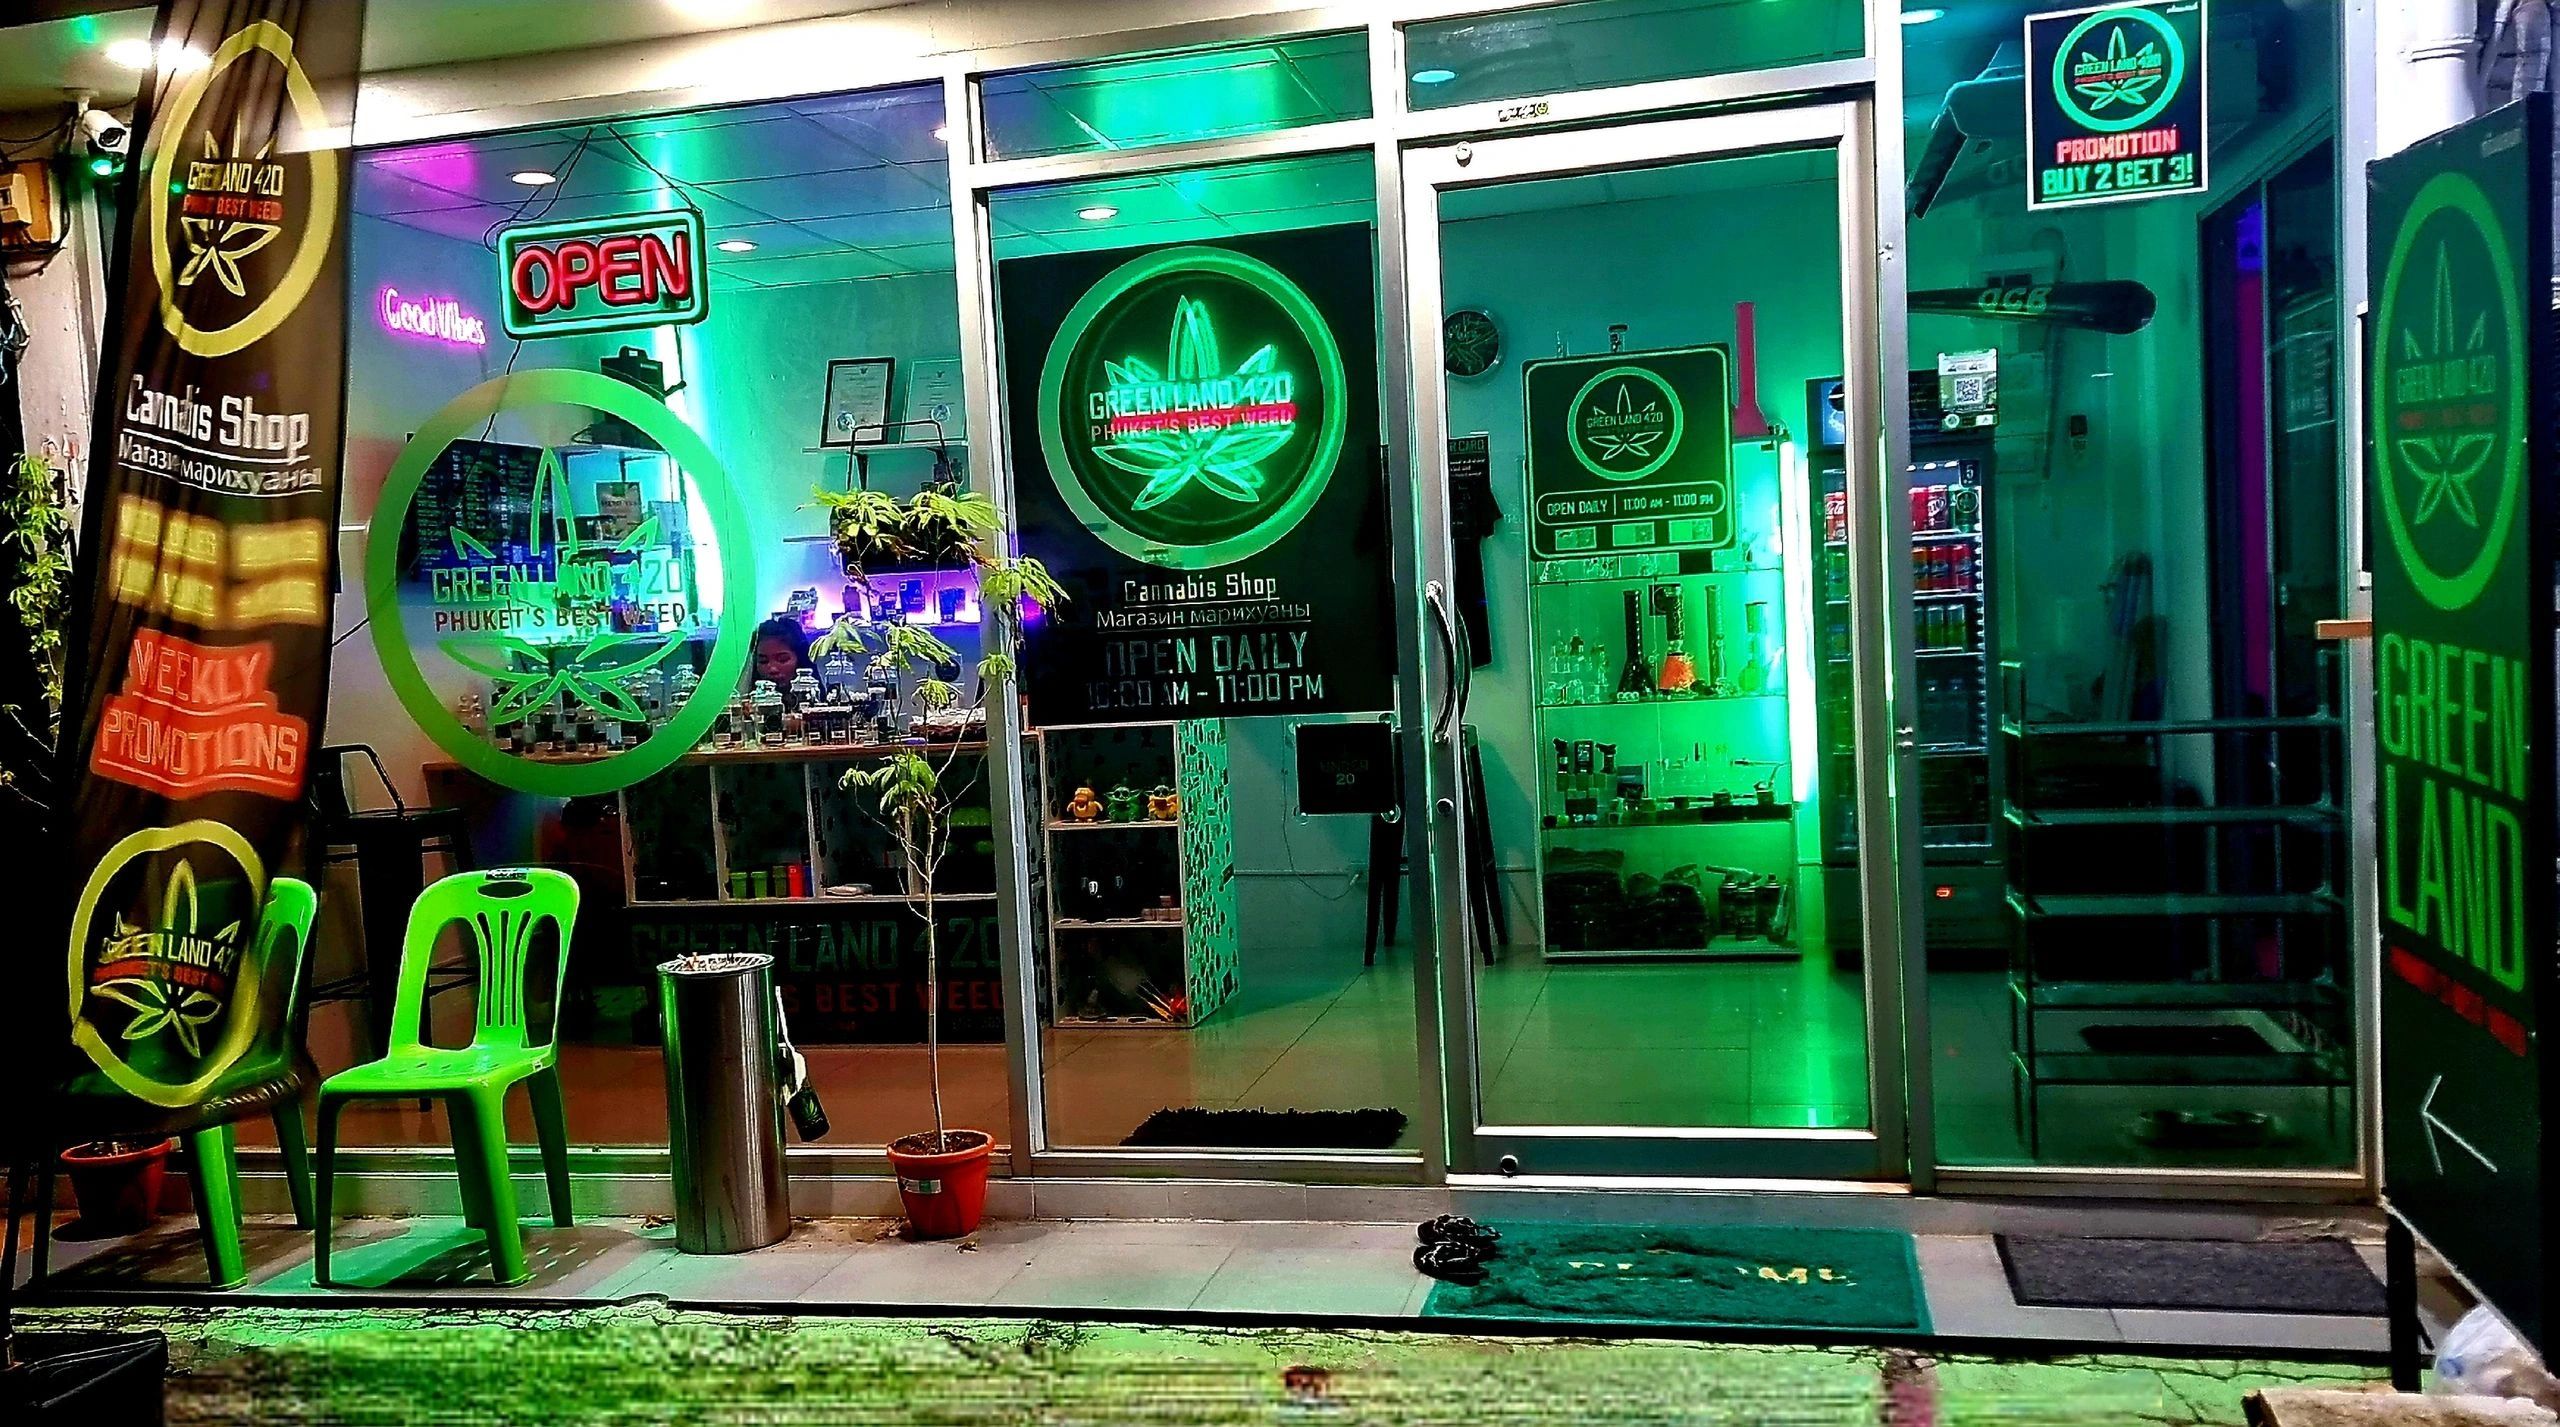 Greenland 420 Cannabis Club Location Kata Beach Phuket